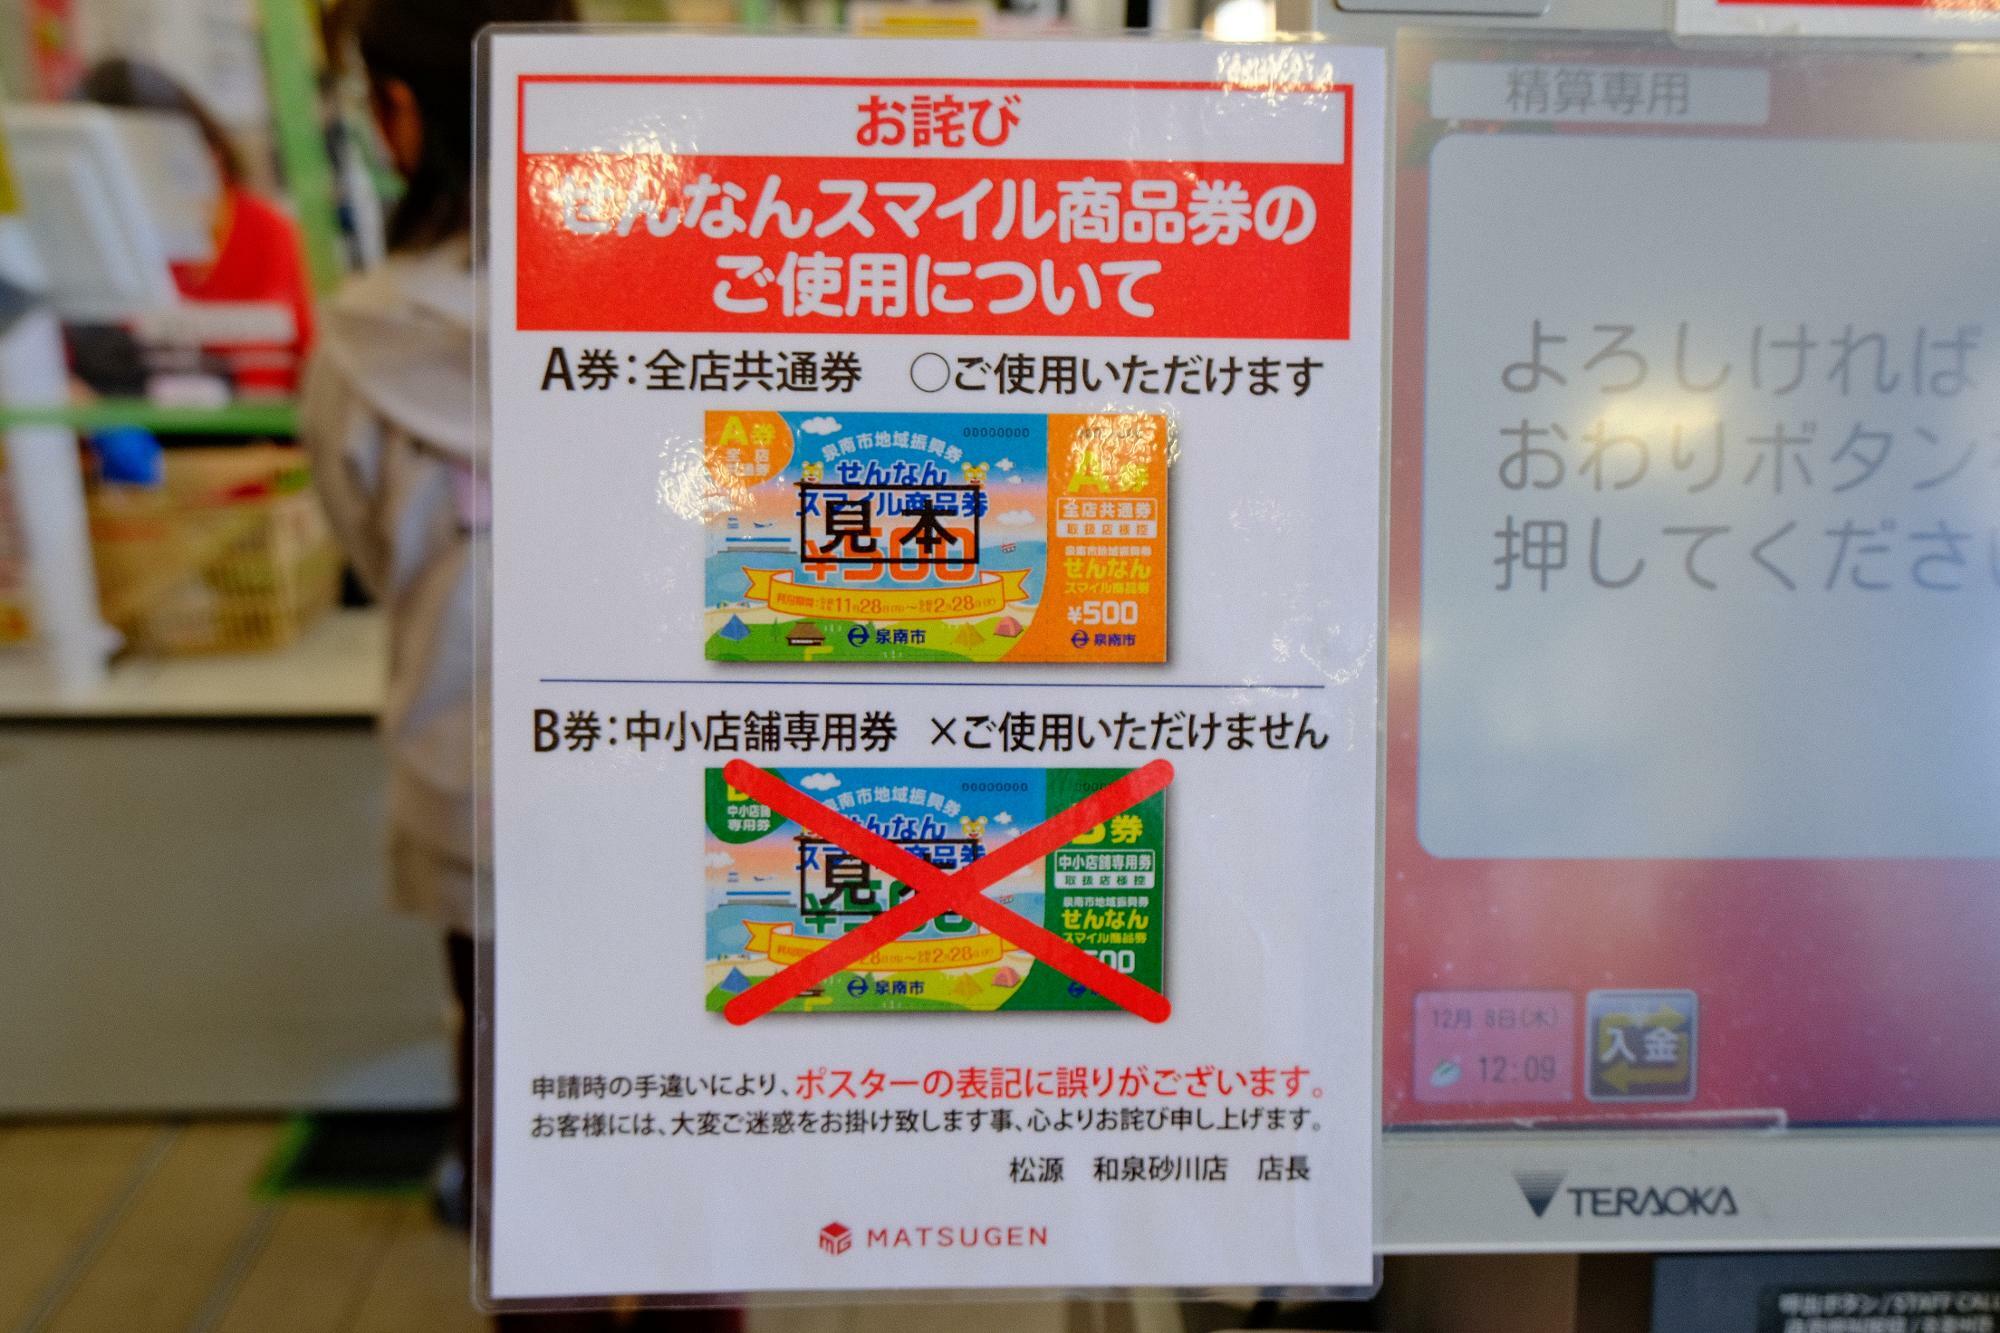 「松源 和泉砂川店」では、「泉南市地域振興券 A 券」をご使用いただけます